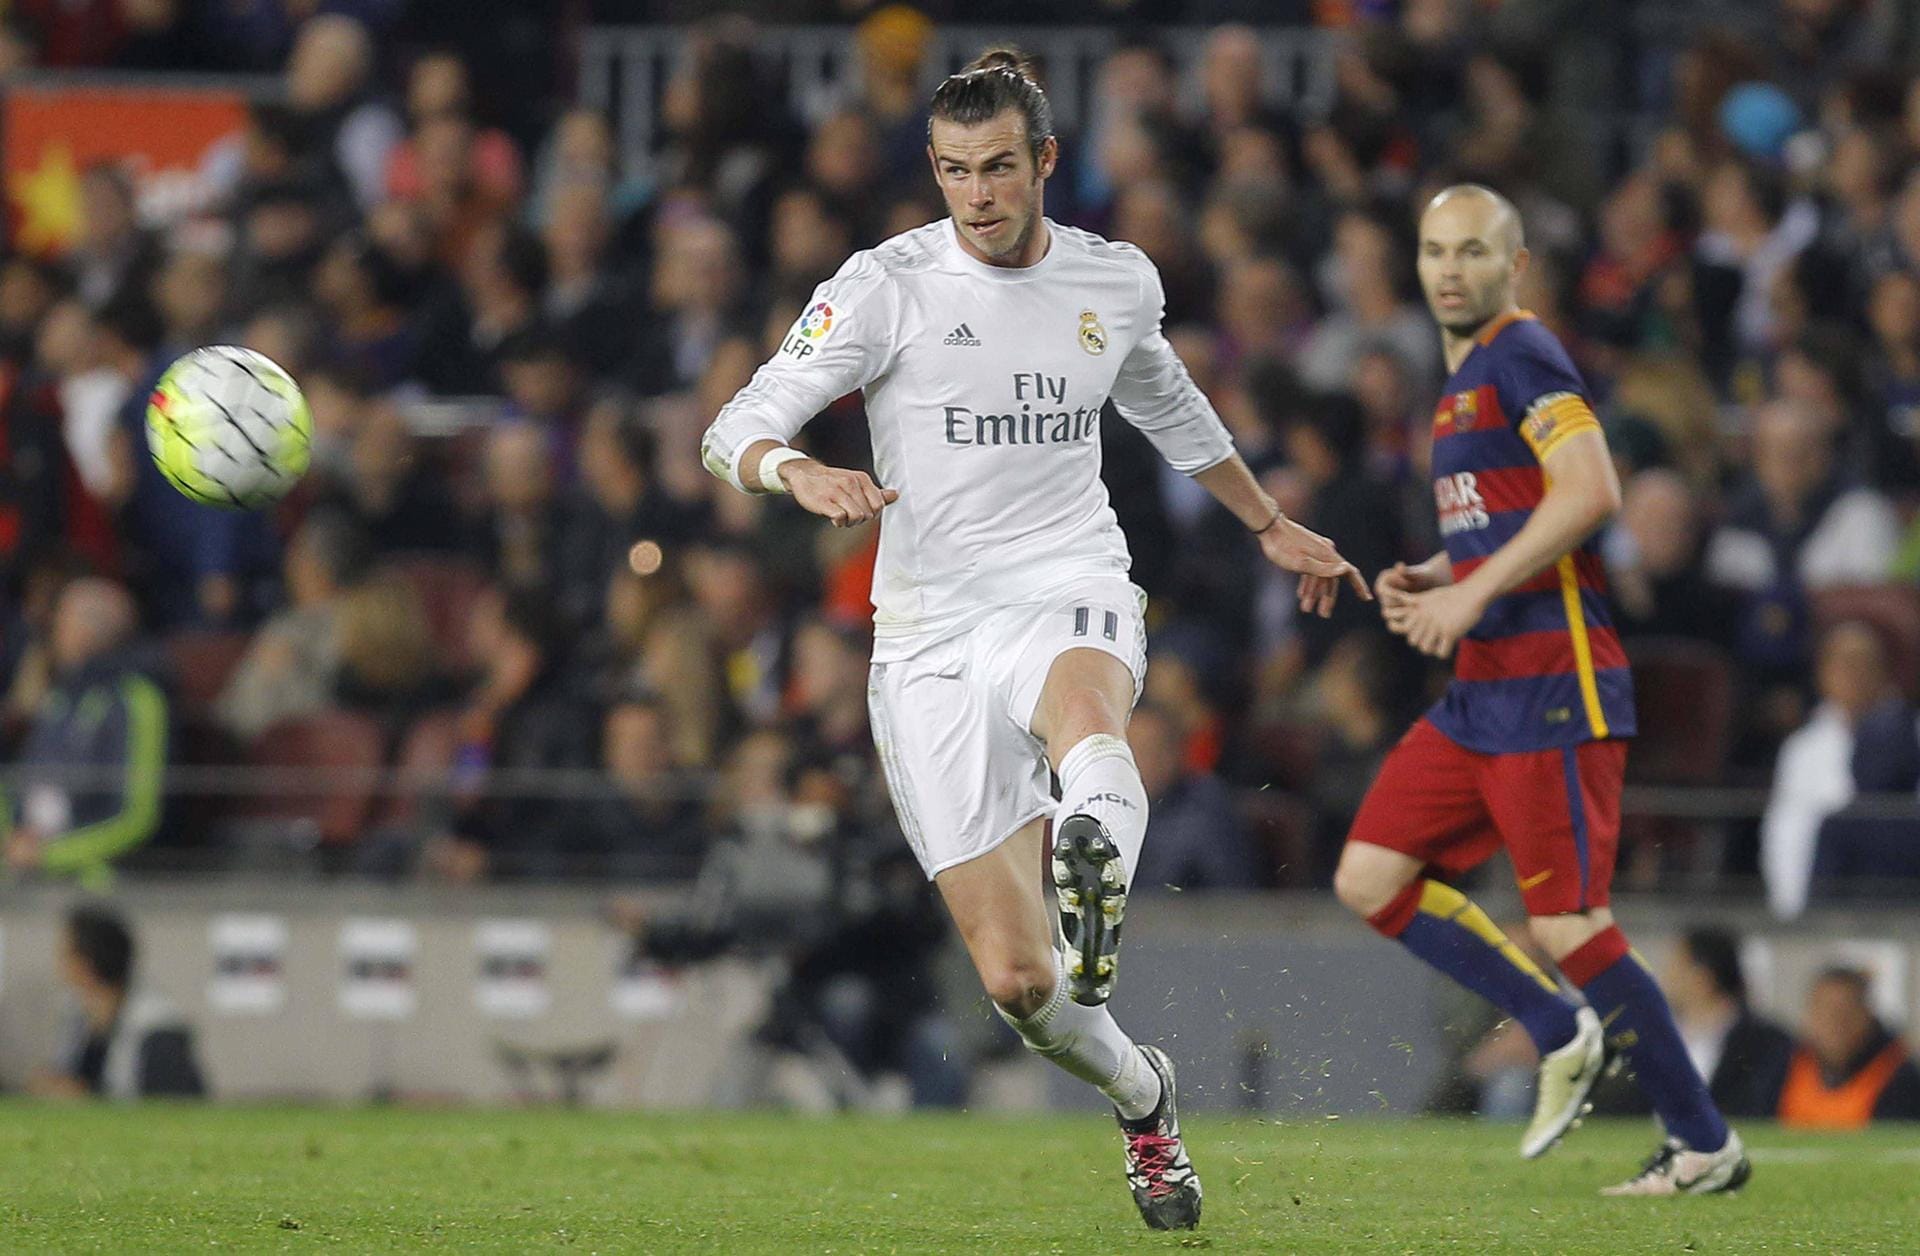 Gareth Bale, 101 Millionen Euro: Bale knackte als Erster die 100-Millionen-Euro-Marke und löste Cristiano Ronaldo 2013 als bislang teuersten Transfer ab. Mittlerweile spielt der Waliser kaum noch eine große Rolle in Madrid und wurde zur Saison 20/21 sogar zu seinem alten Klub Tottenham ausgeliehen.